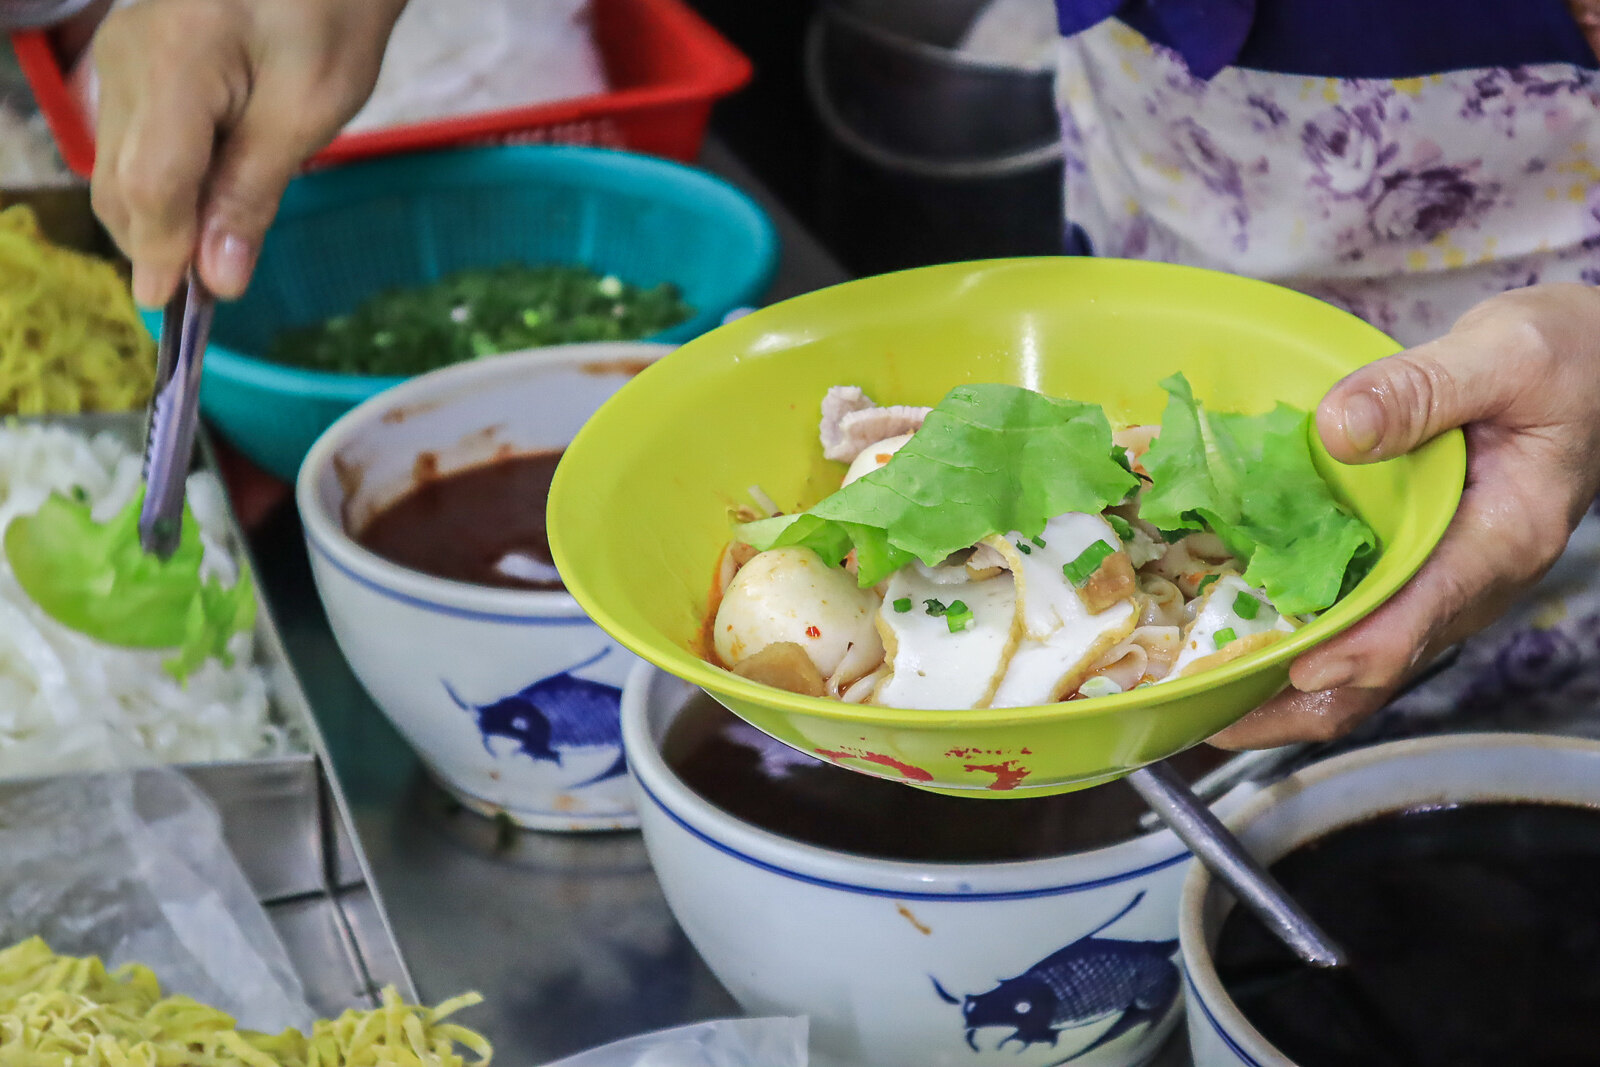 Taman Jurong Market and Food Centre - Leng Huat fishball noodle holding bowl